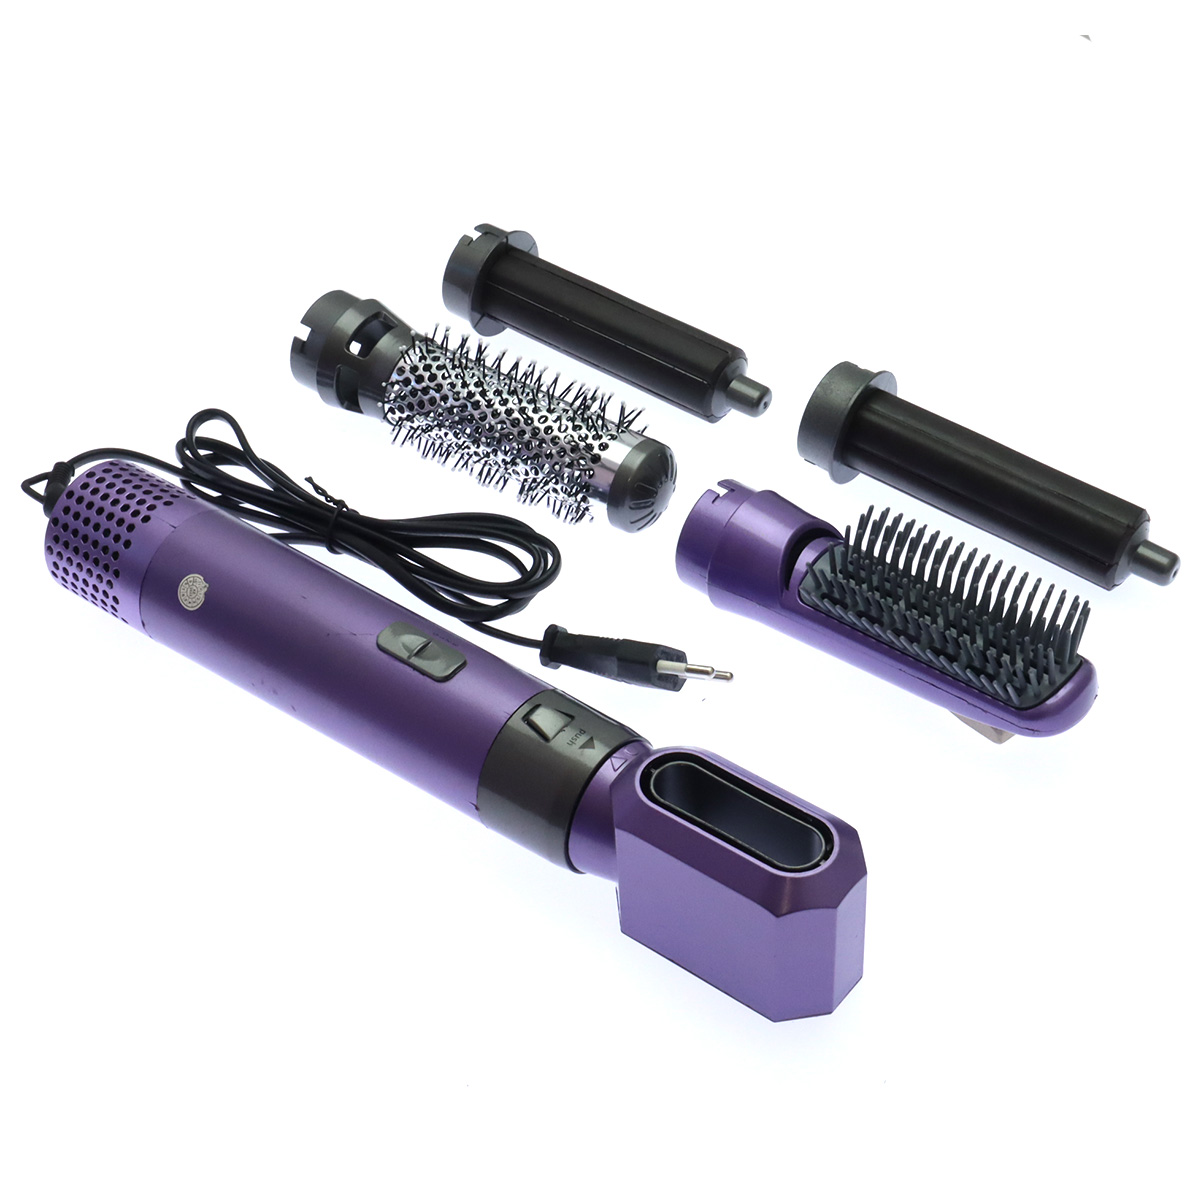 Стайлер (фен щетка) для волос Hot Air Styler, 5 насадок, 1000W, кейс, цвет фиолетово черный